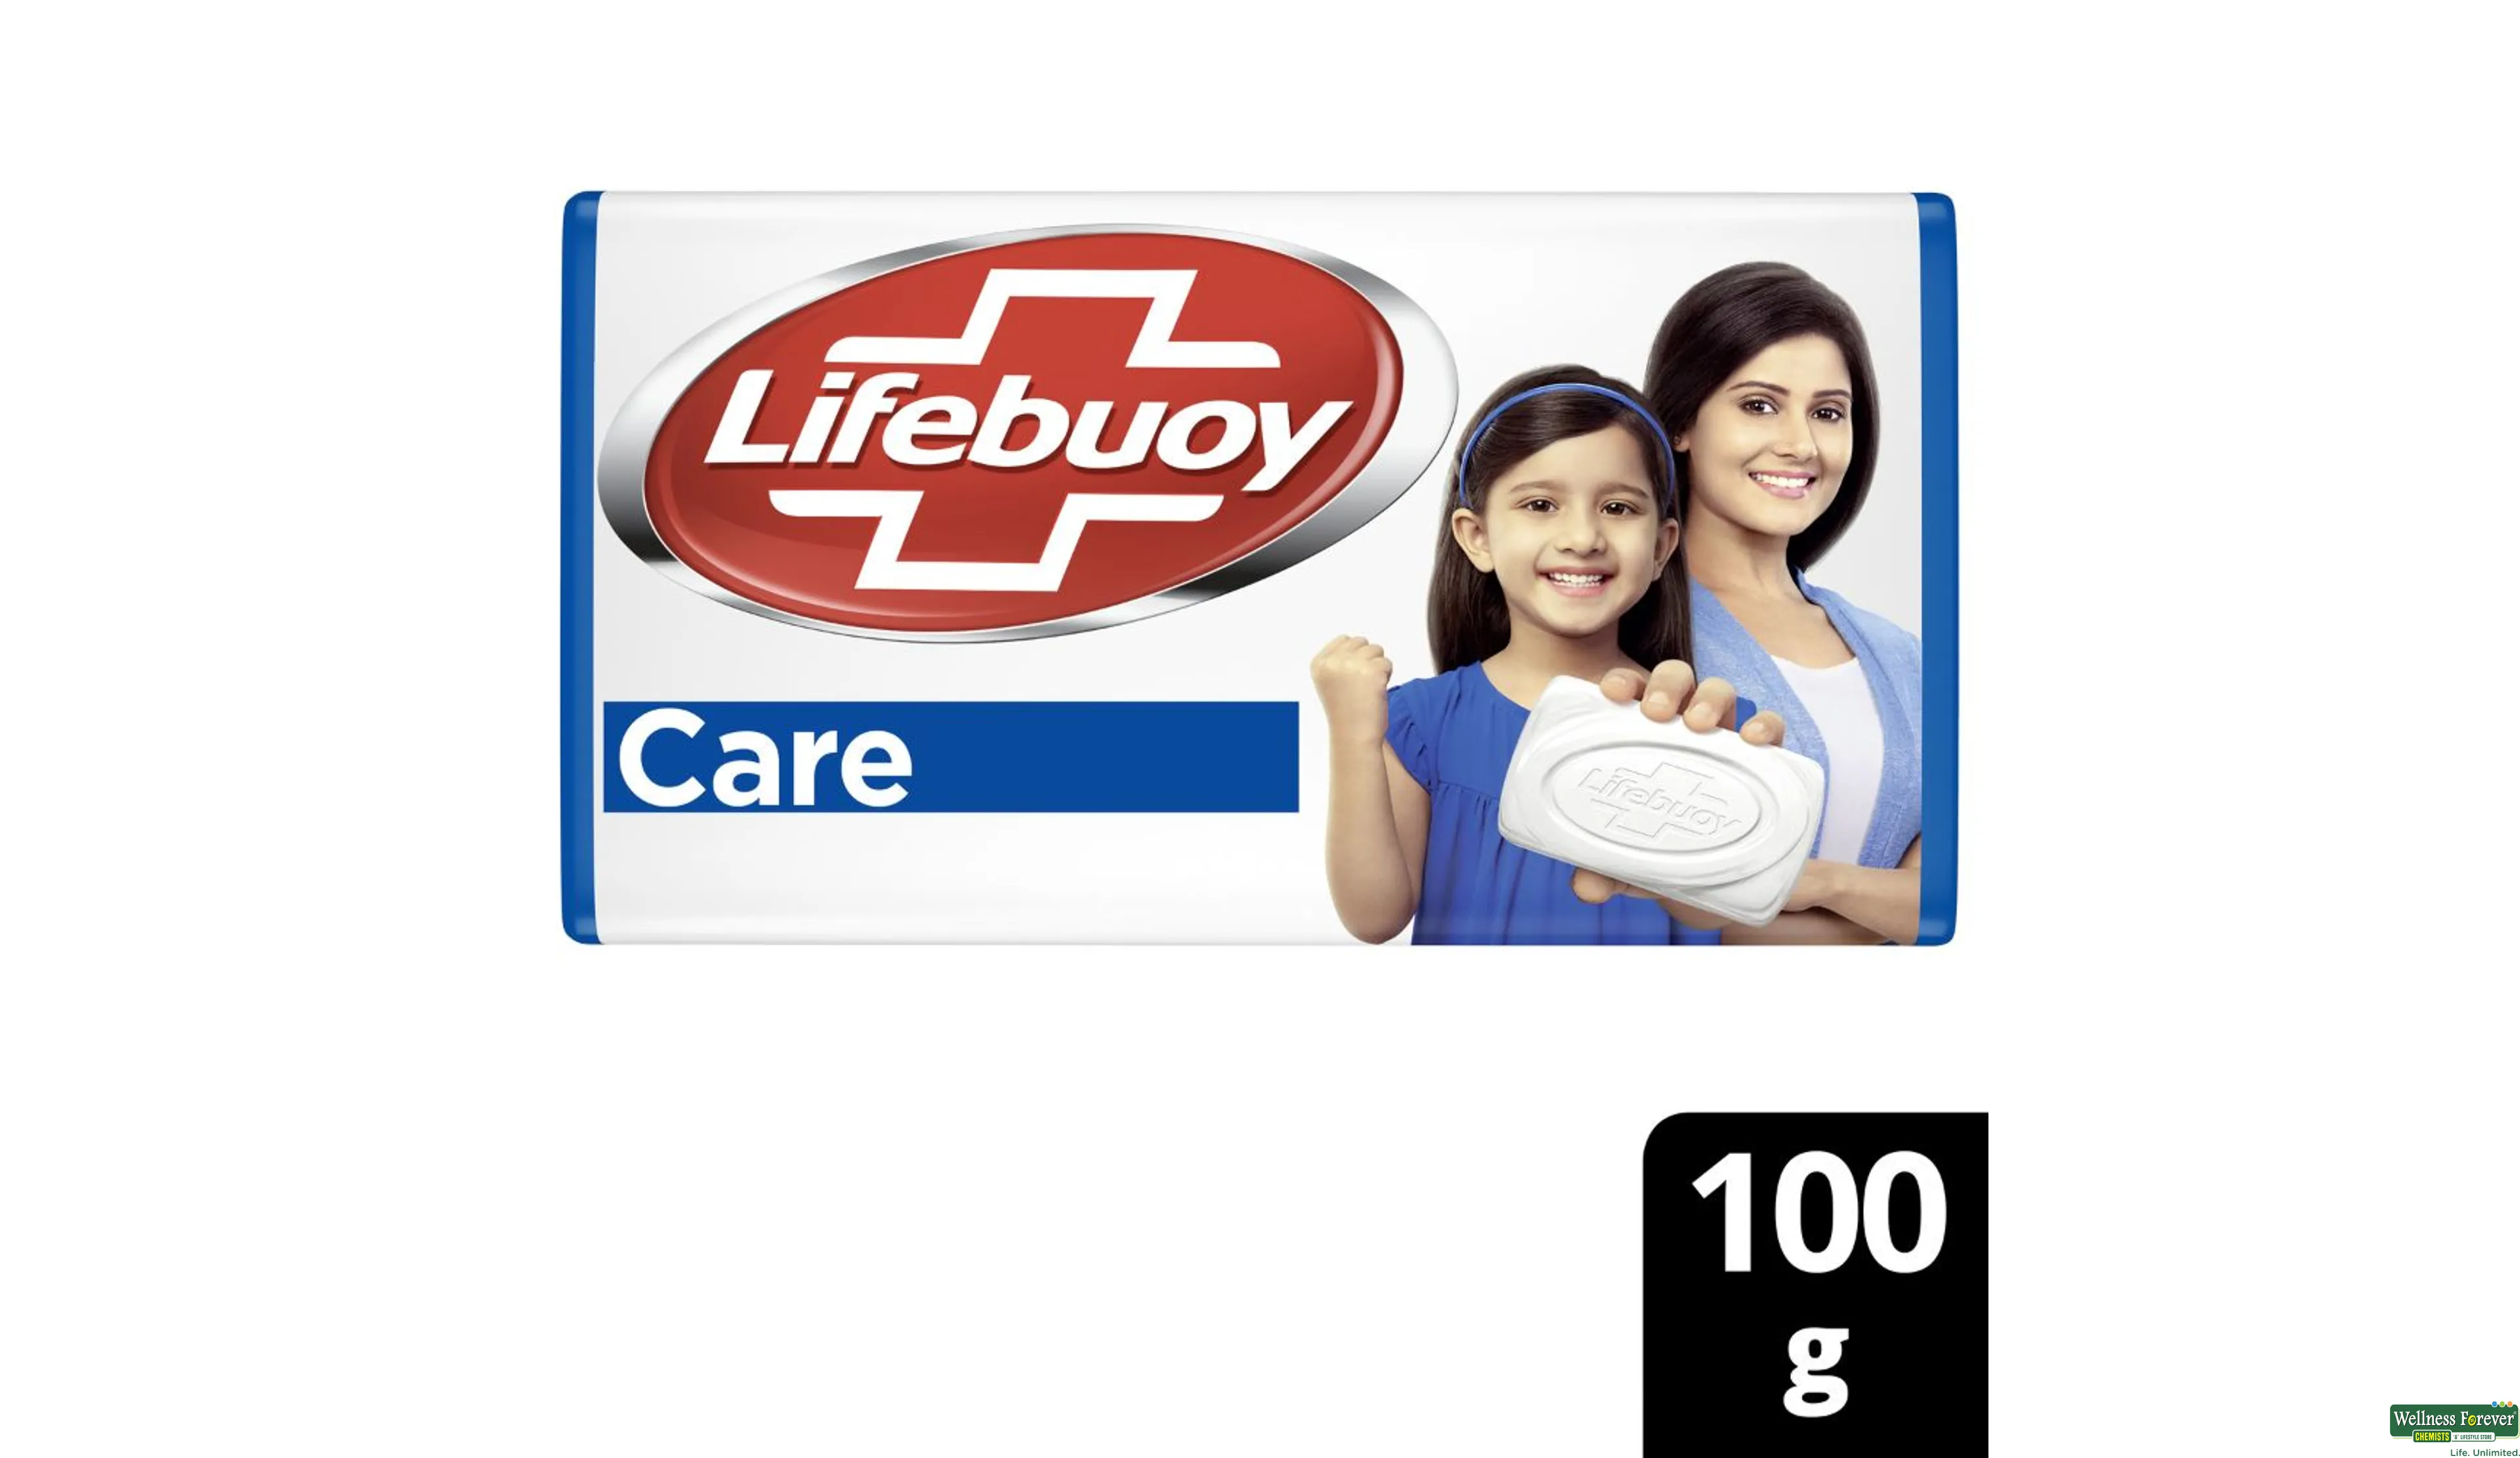 LIFEBUOY SOAP CARE 100GM- 1, 100GM, 